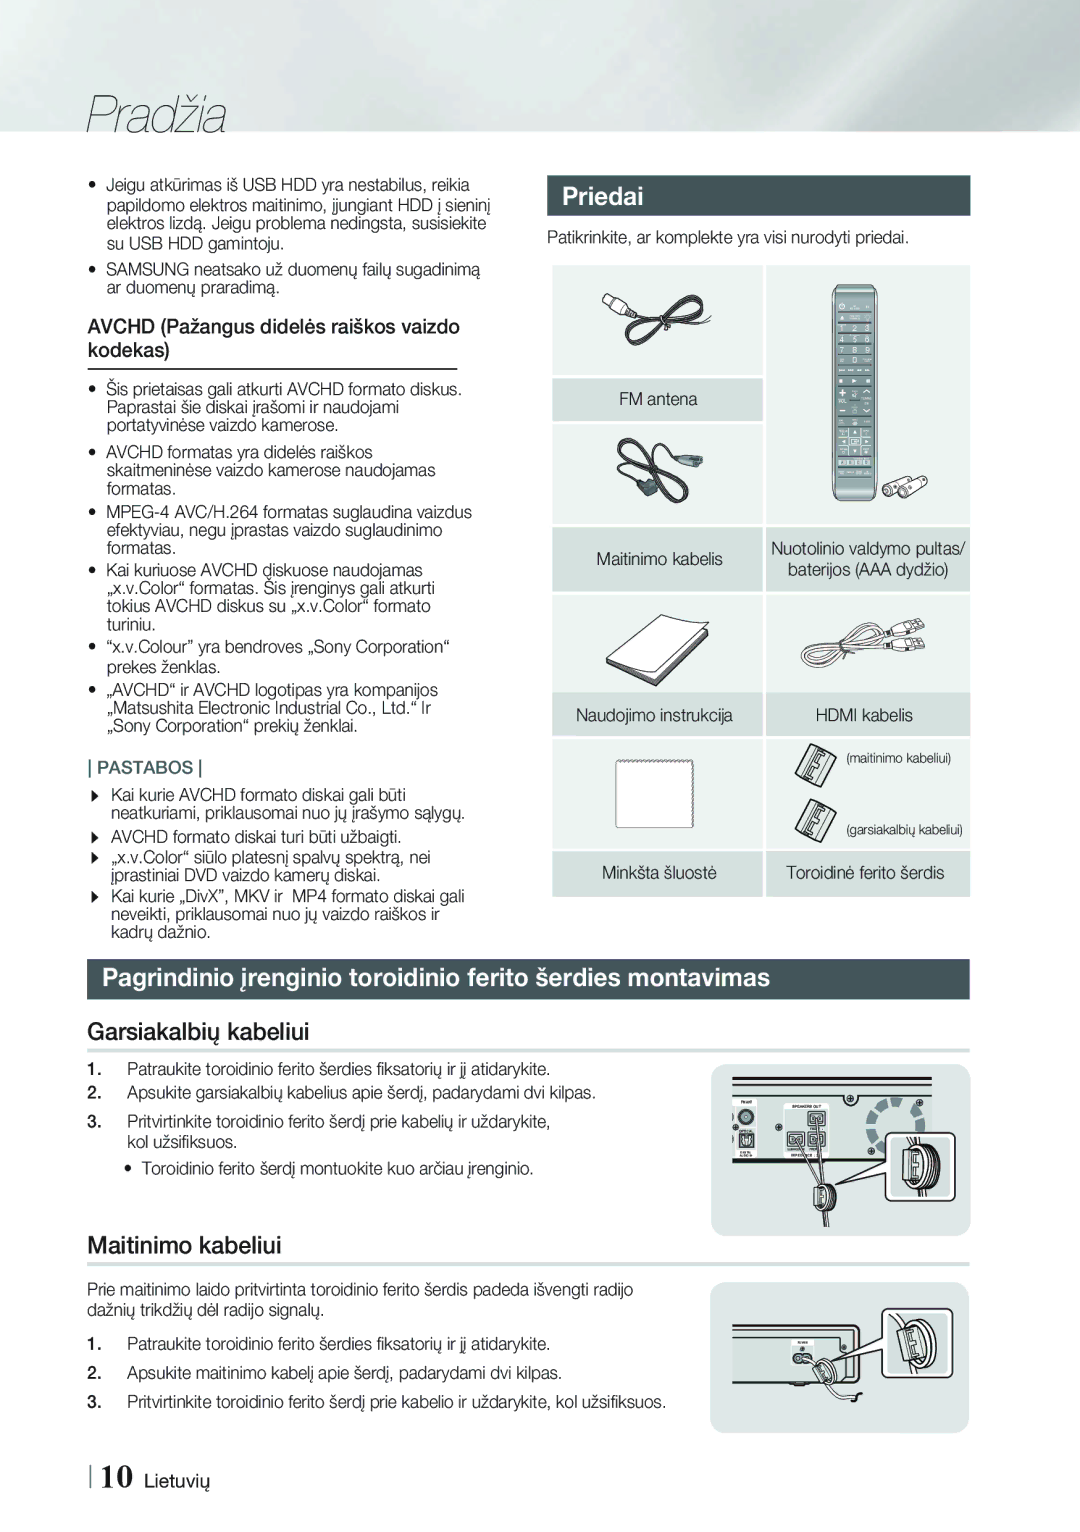 Samsung HT-FS9200/EN manual Priedai, Pagrindinio įrenginio toroidinio ferito šerdies montavimas, Garsiakalbių kabeliui 